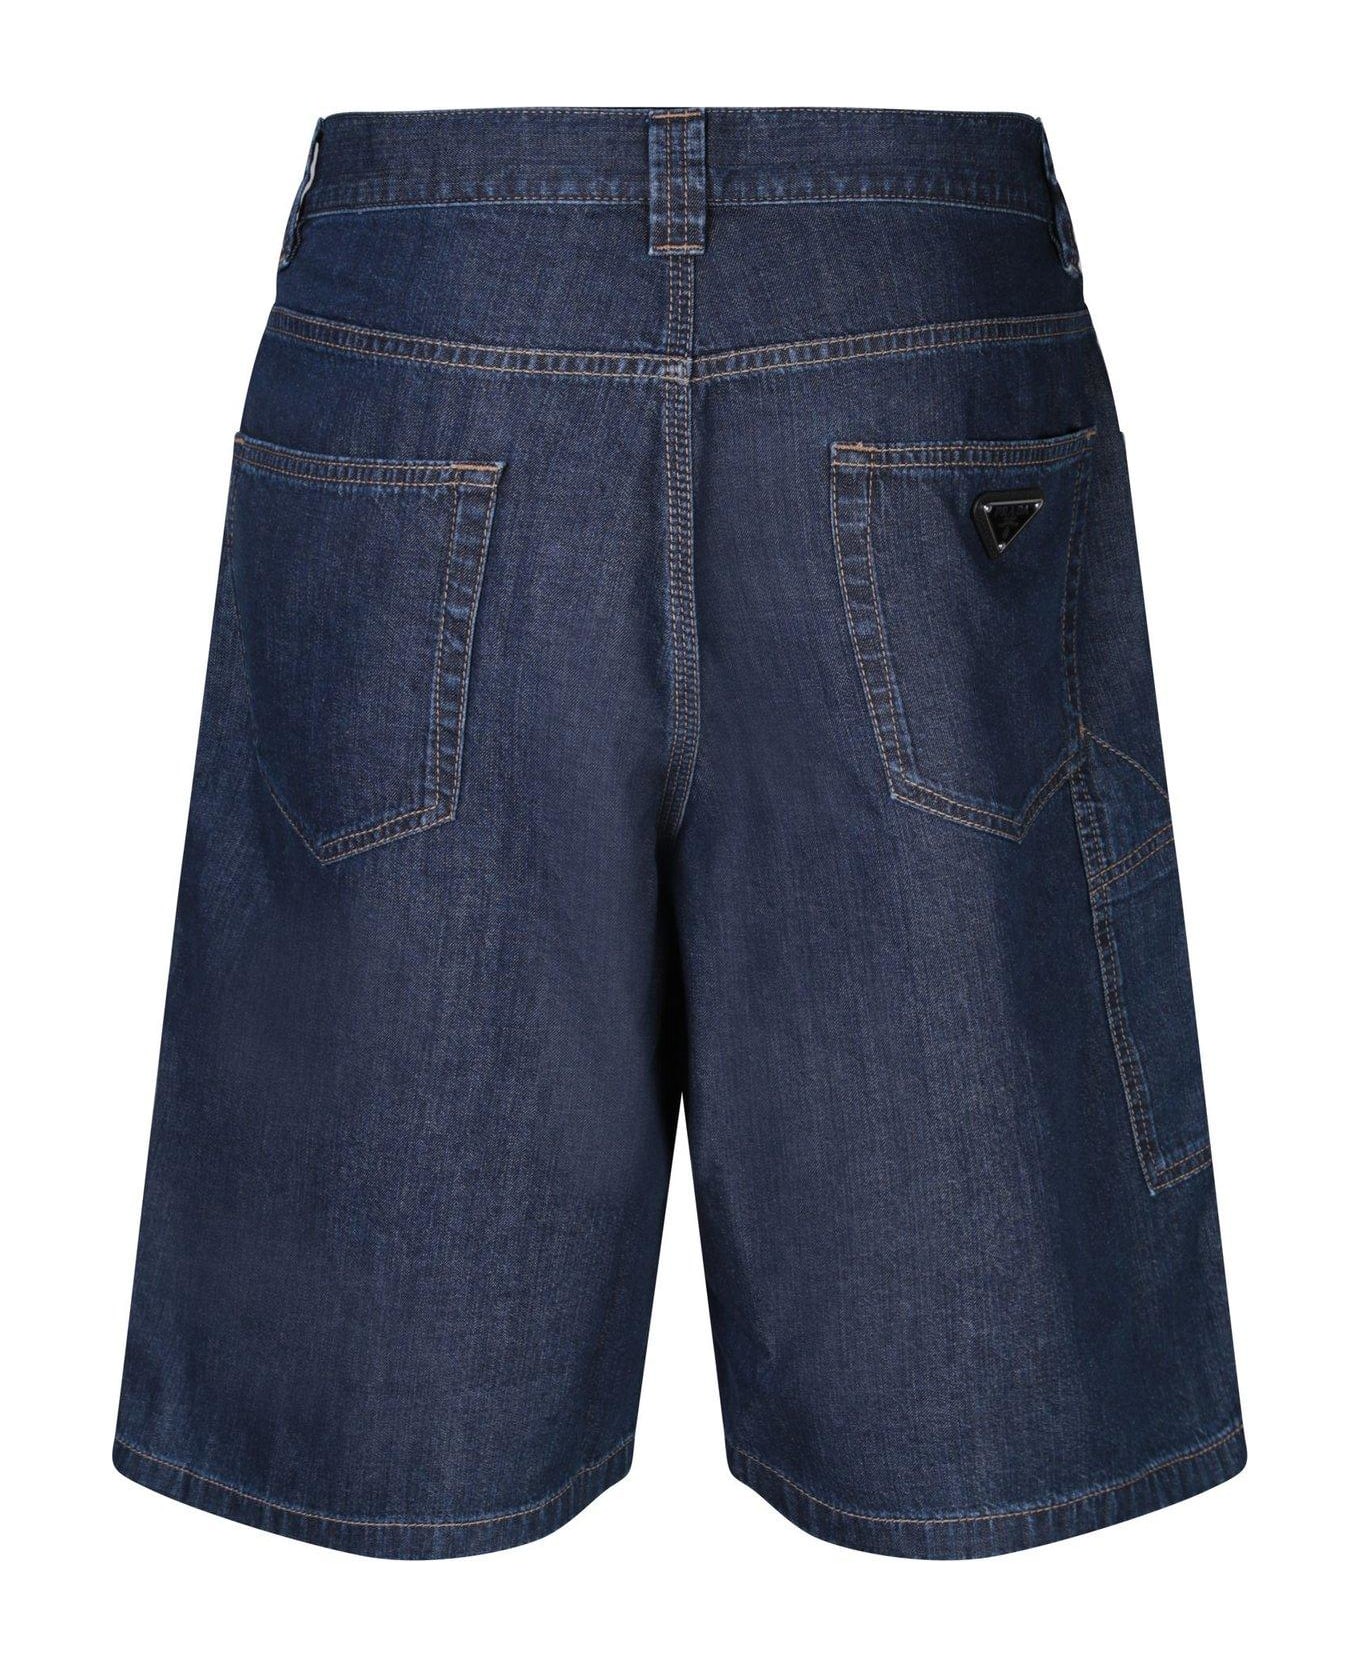 Prada Denim Buttoned Shorts - Blue